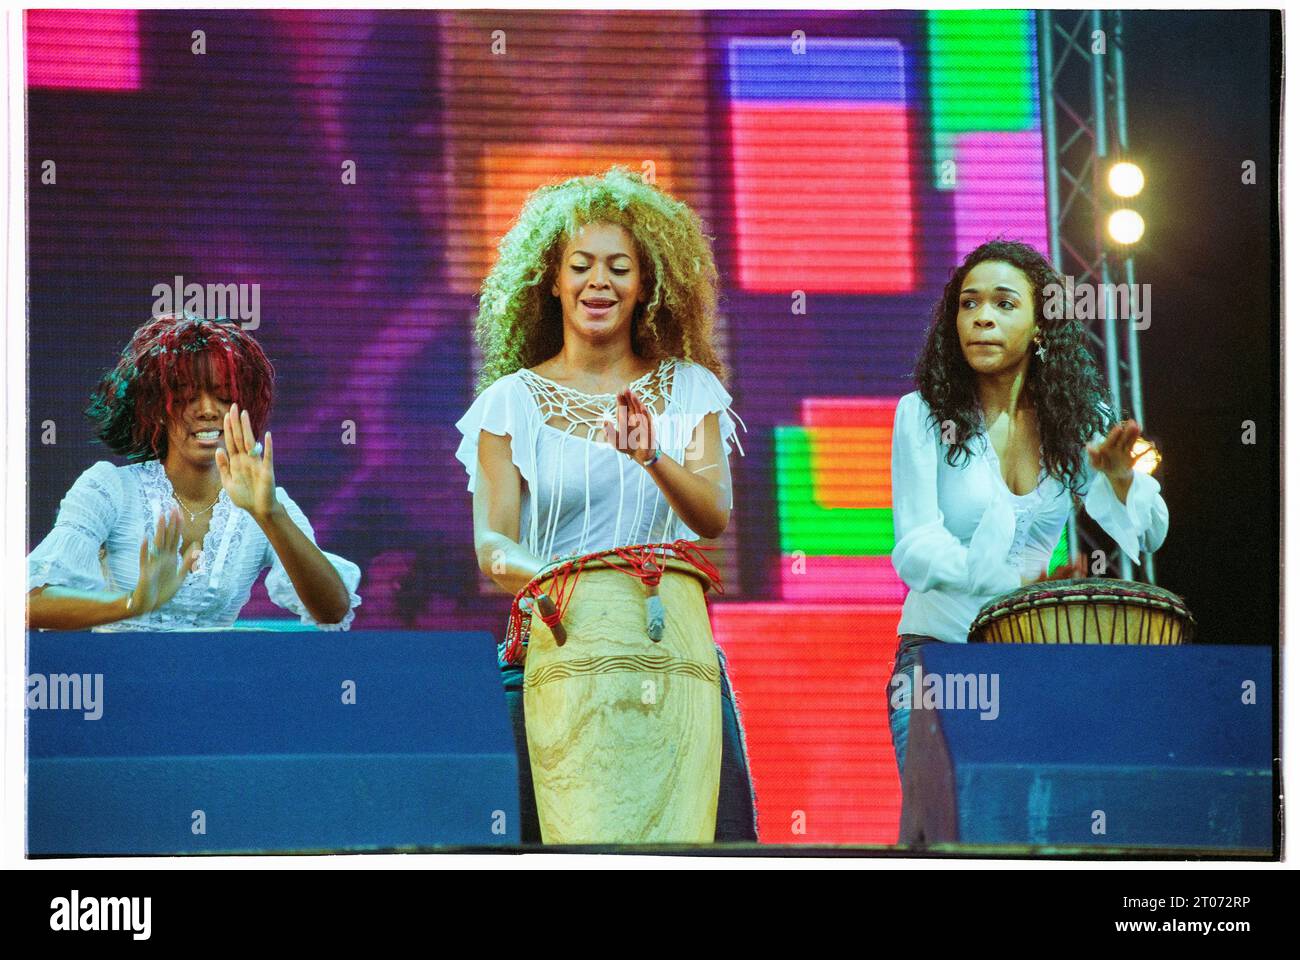 Kelly Rowland, Beyonce Knowles und Michelle Williams von Destiny's Child spielen am 16. Juni 2002 live bei Radio 1 One Big Sunday im Morfa Stadium in Swansea. Foto: Rob Watkins. VOLLSTÄNDIGER NEGATIVER SCAN EINSCHLIESSLICH RAHMENRÄNDERN Stockfoto